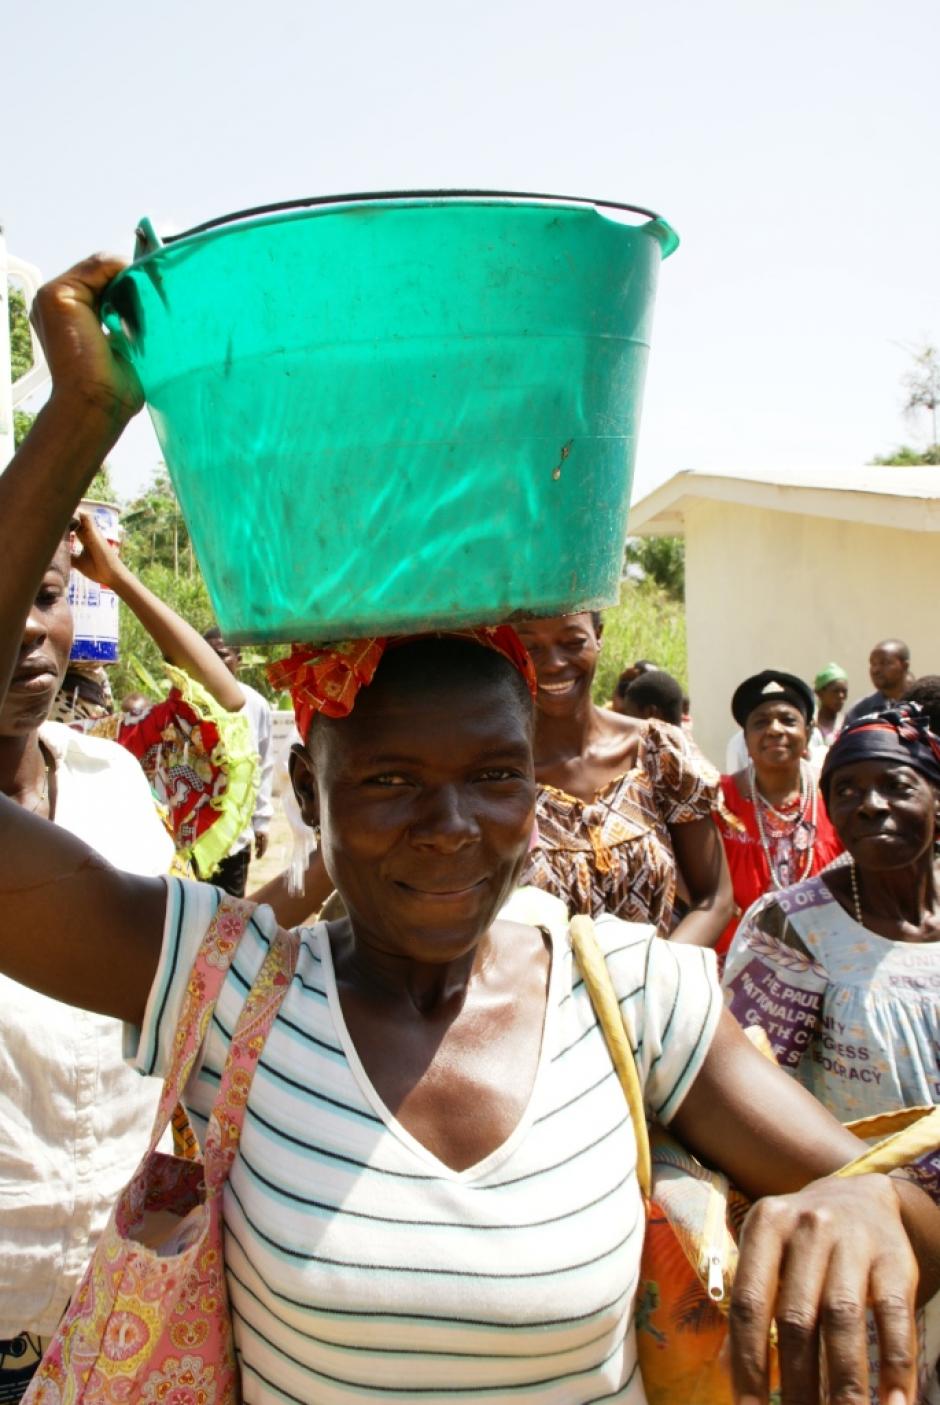 El proyecto de Manos Unidas en Camerún cuenta con 23.400 beneficiarios directos